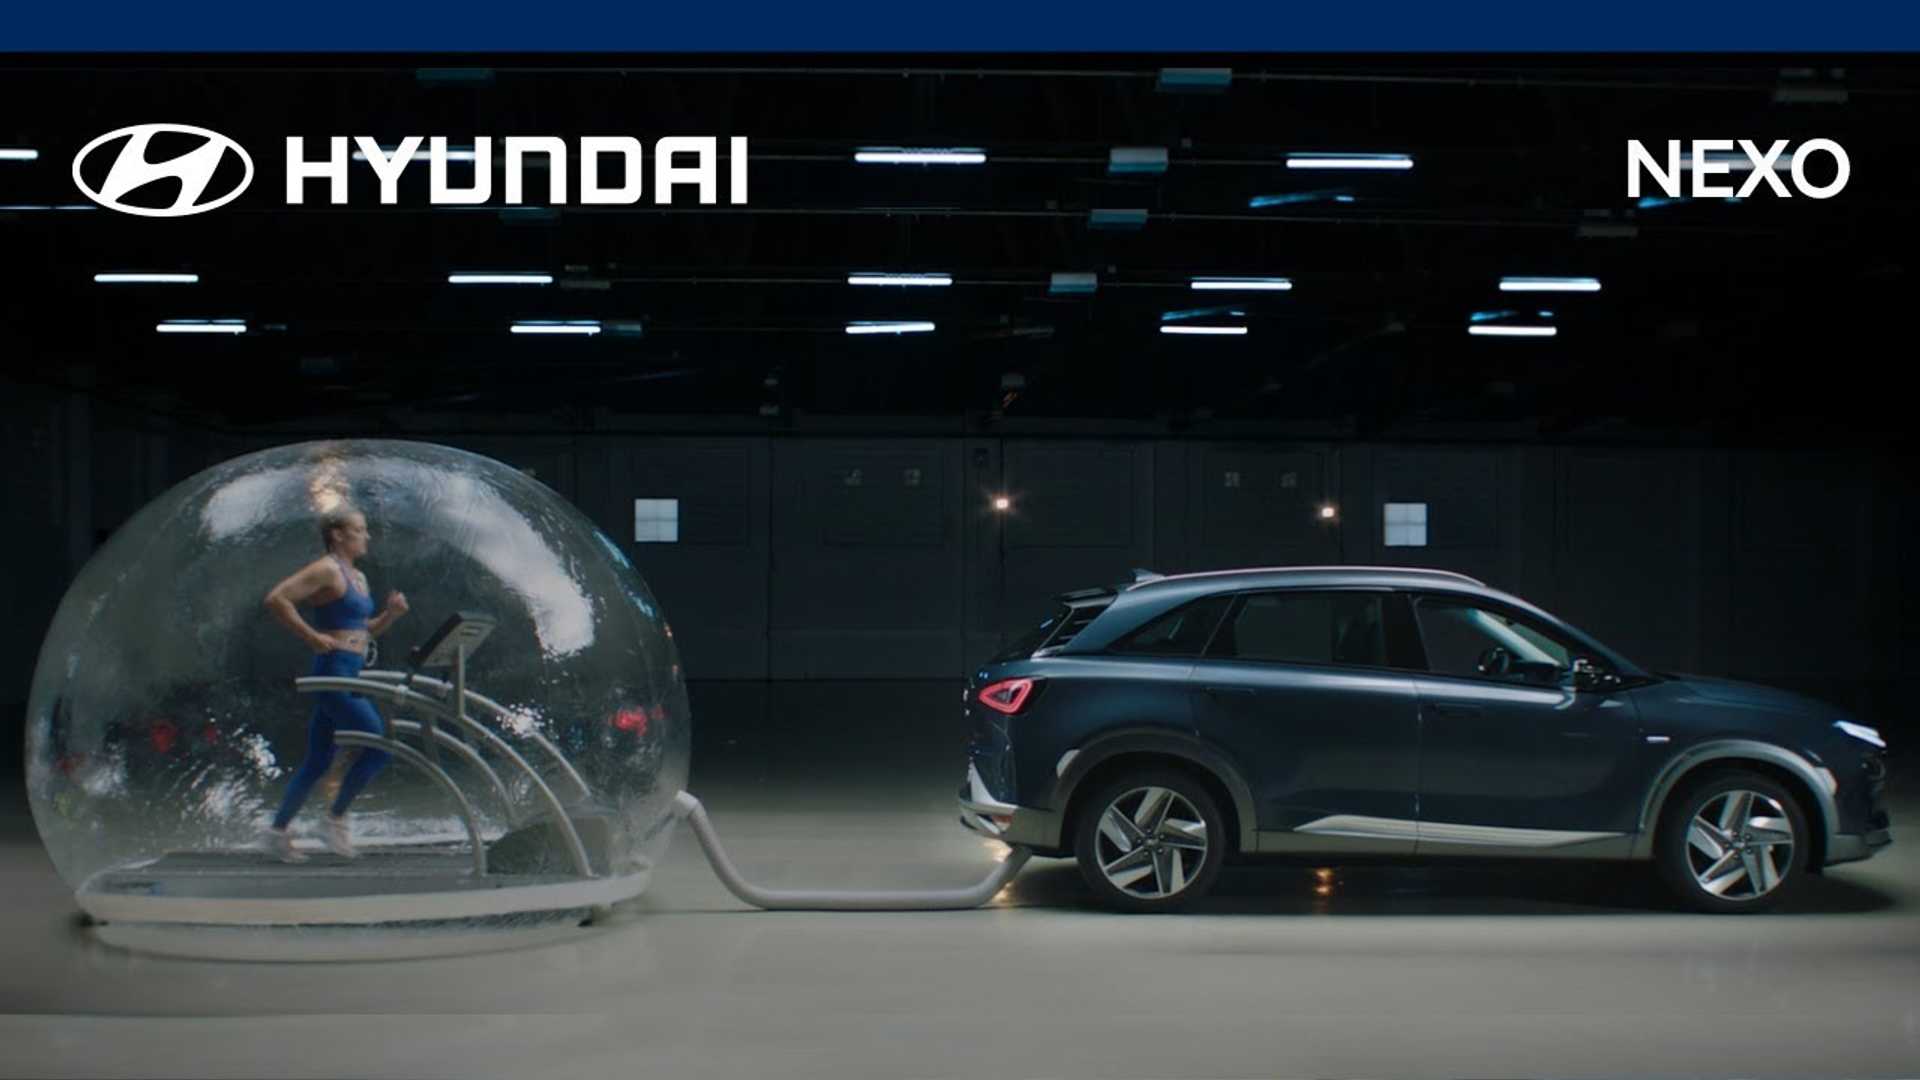 Hydrogen Hyundai Nexo - قيادة هذه السيارة ، تقوم بتنقية الهواء!